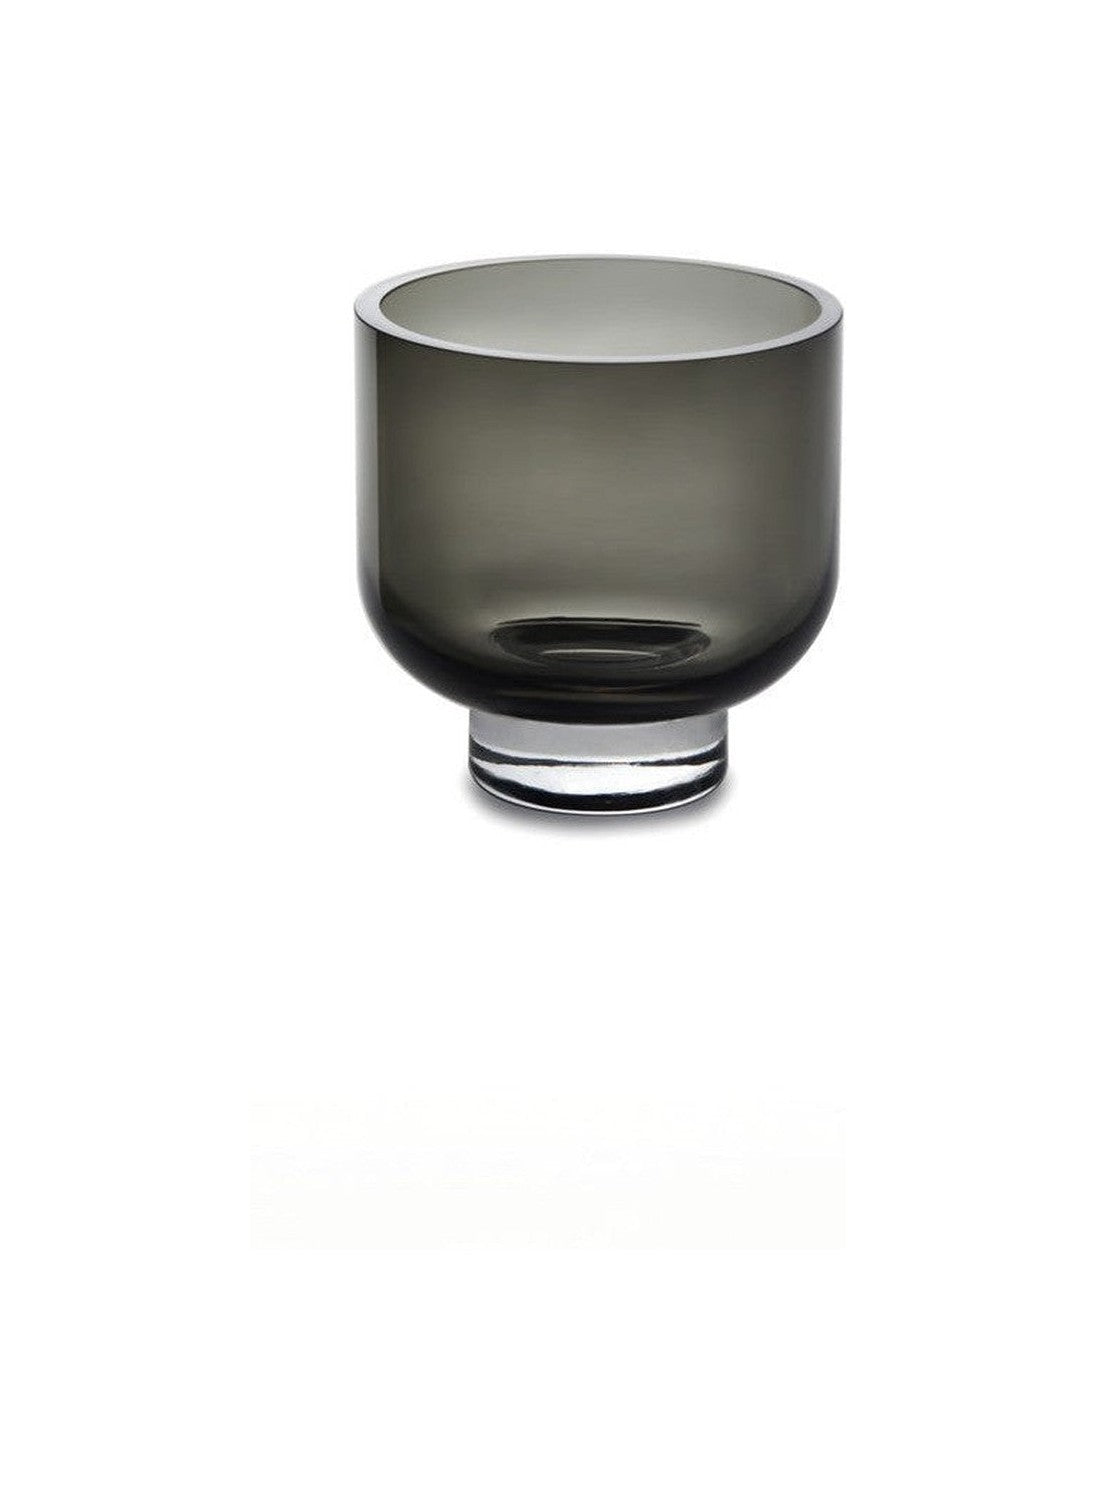 Moderne niedrige Vase oder Schüssel, nüchternes Design, Omaha07gr